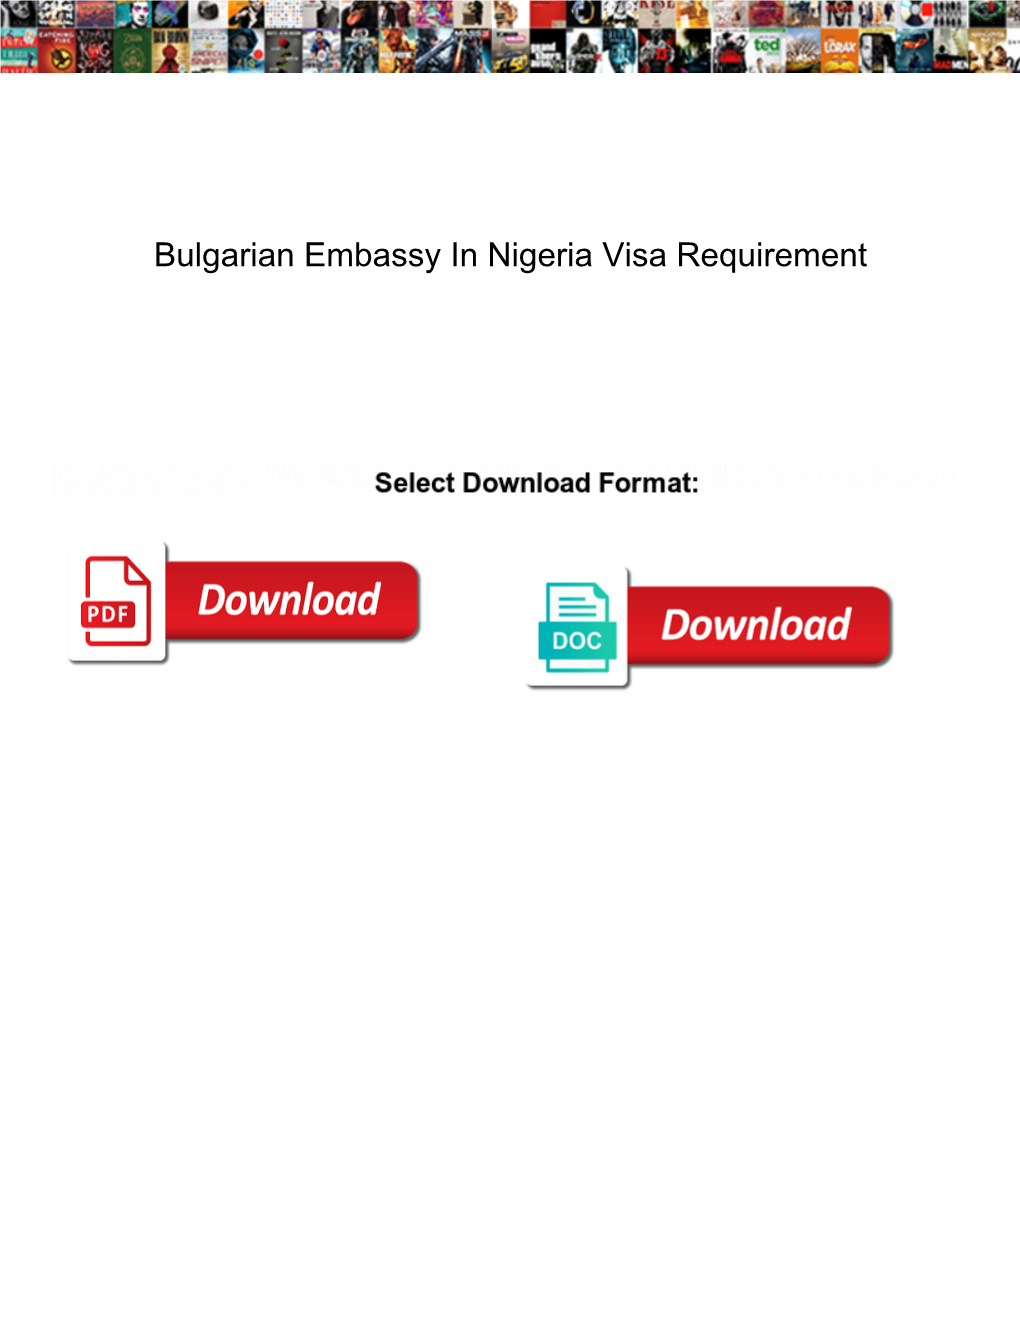 Bulgarian Embassy in Nigeria Visa Requirement